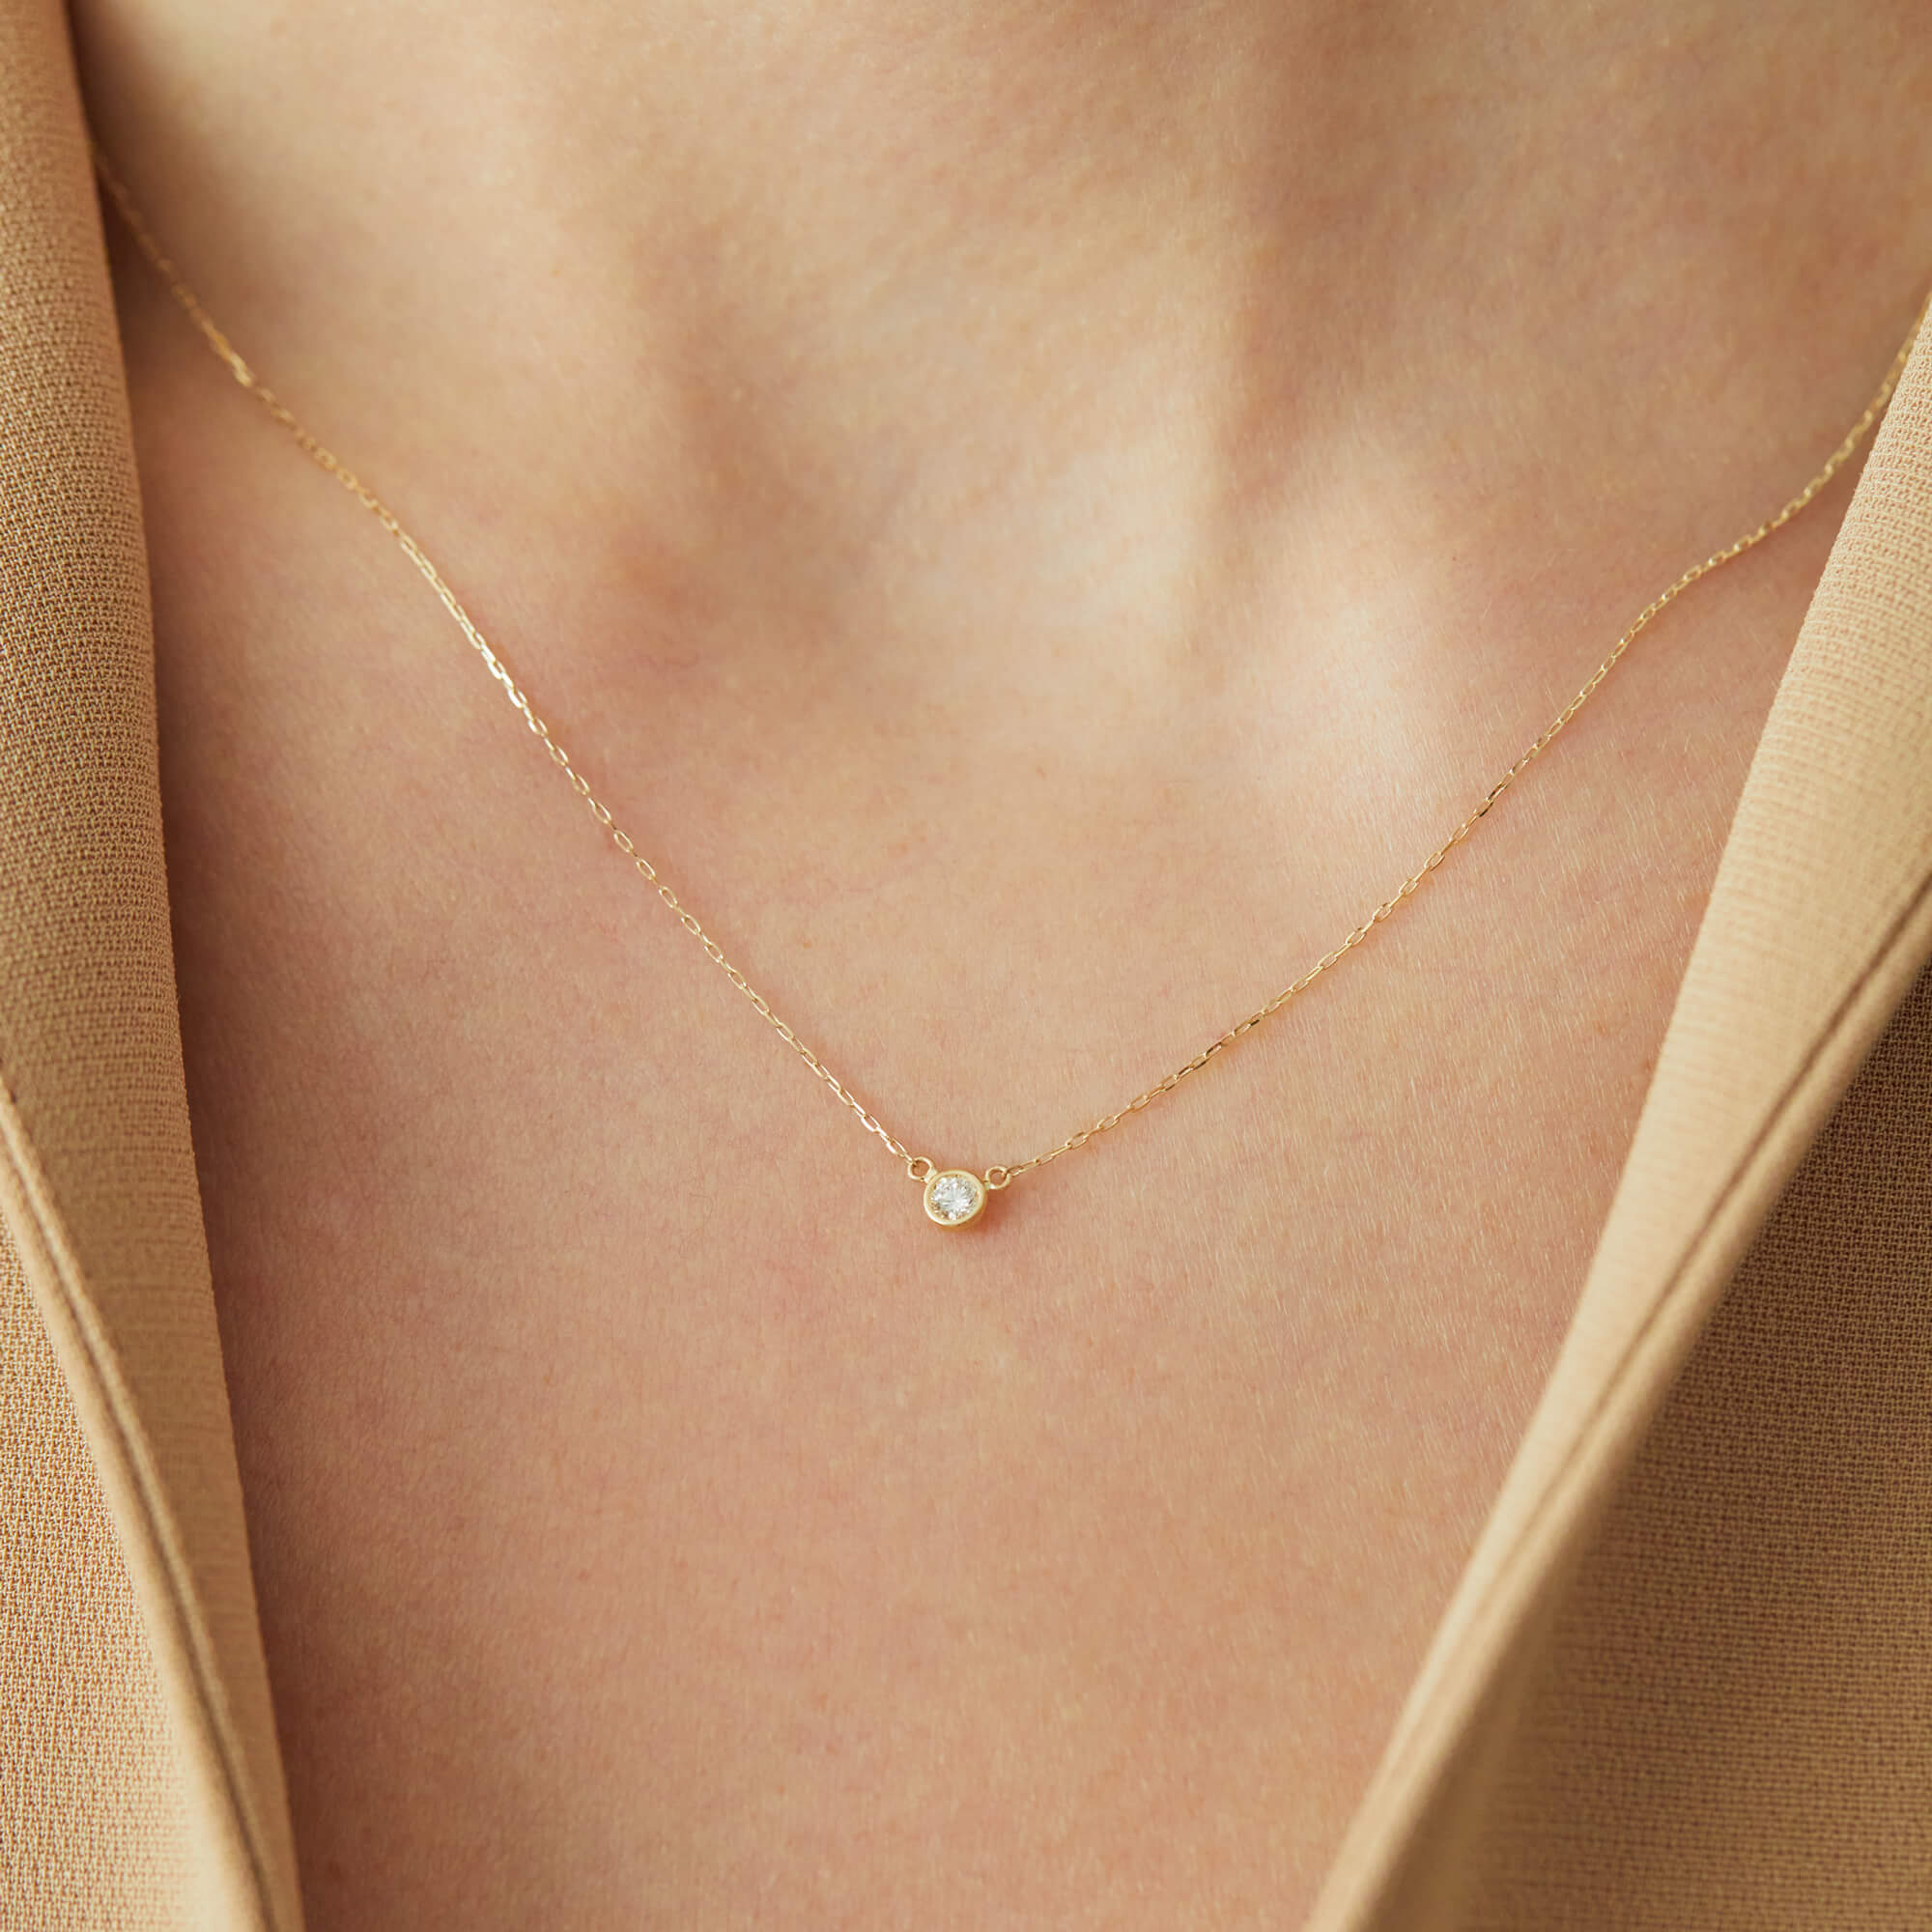 10Kゴールド プティネックレス ダイヤモンド | Aletta Jewelry アレッタジュエリー 